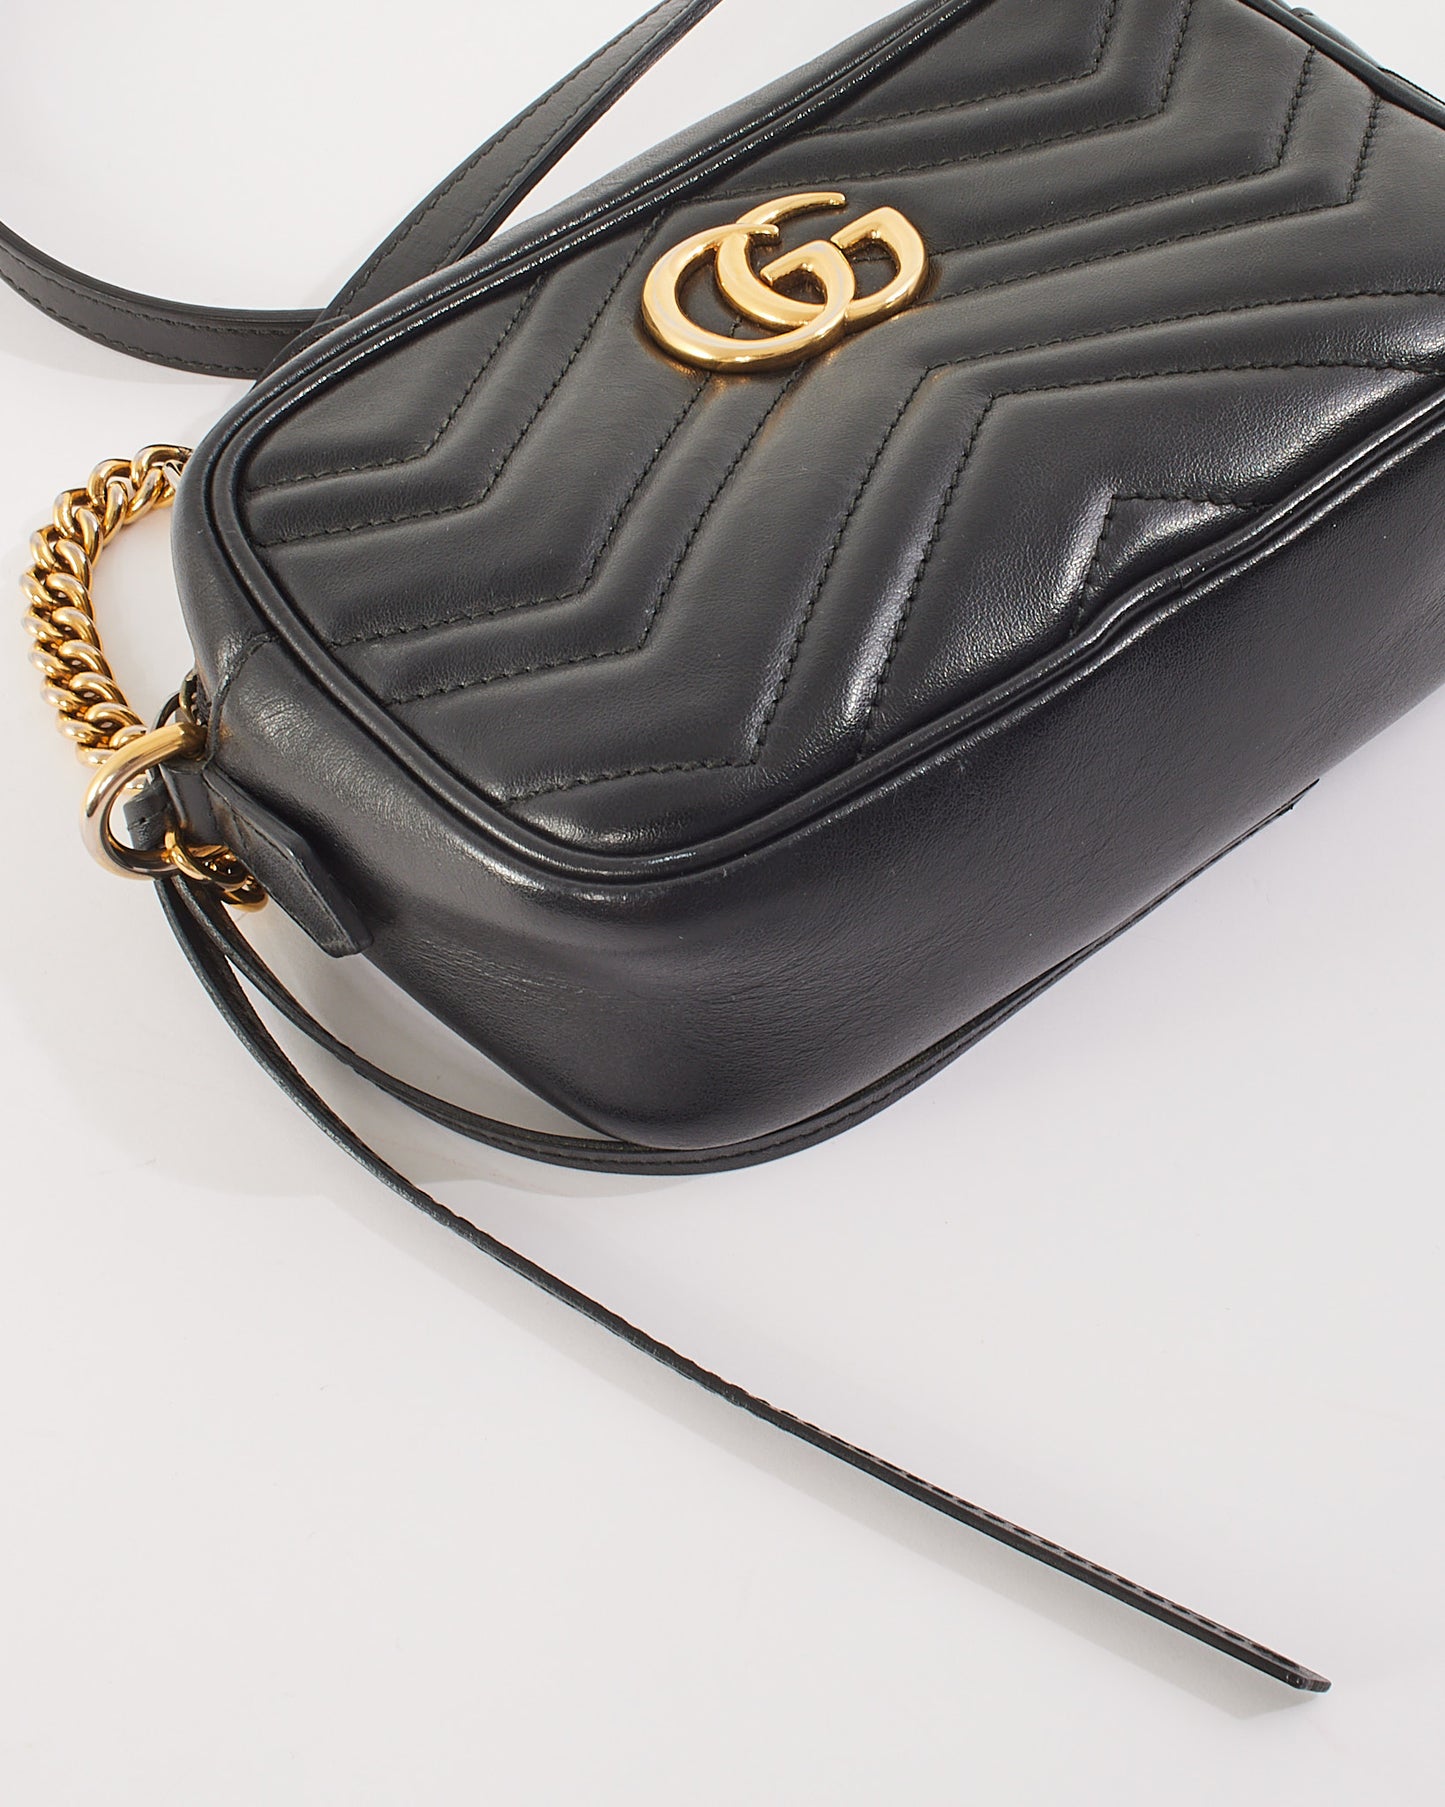 Gucci Black Matelassé Leather GG Marmont Mini Shoulder Bag